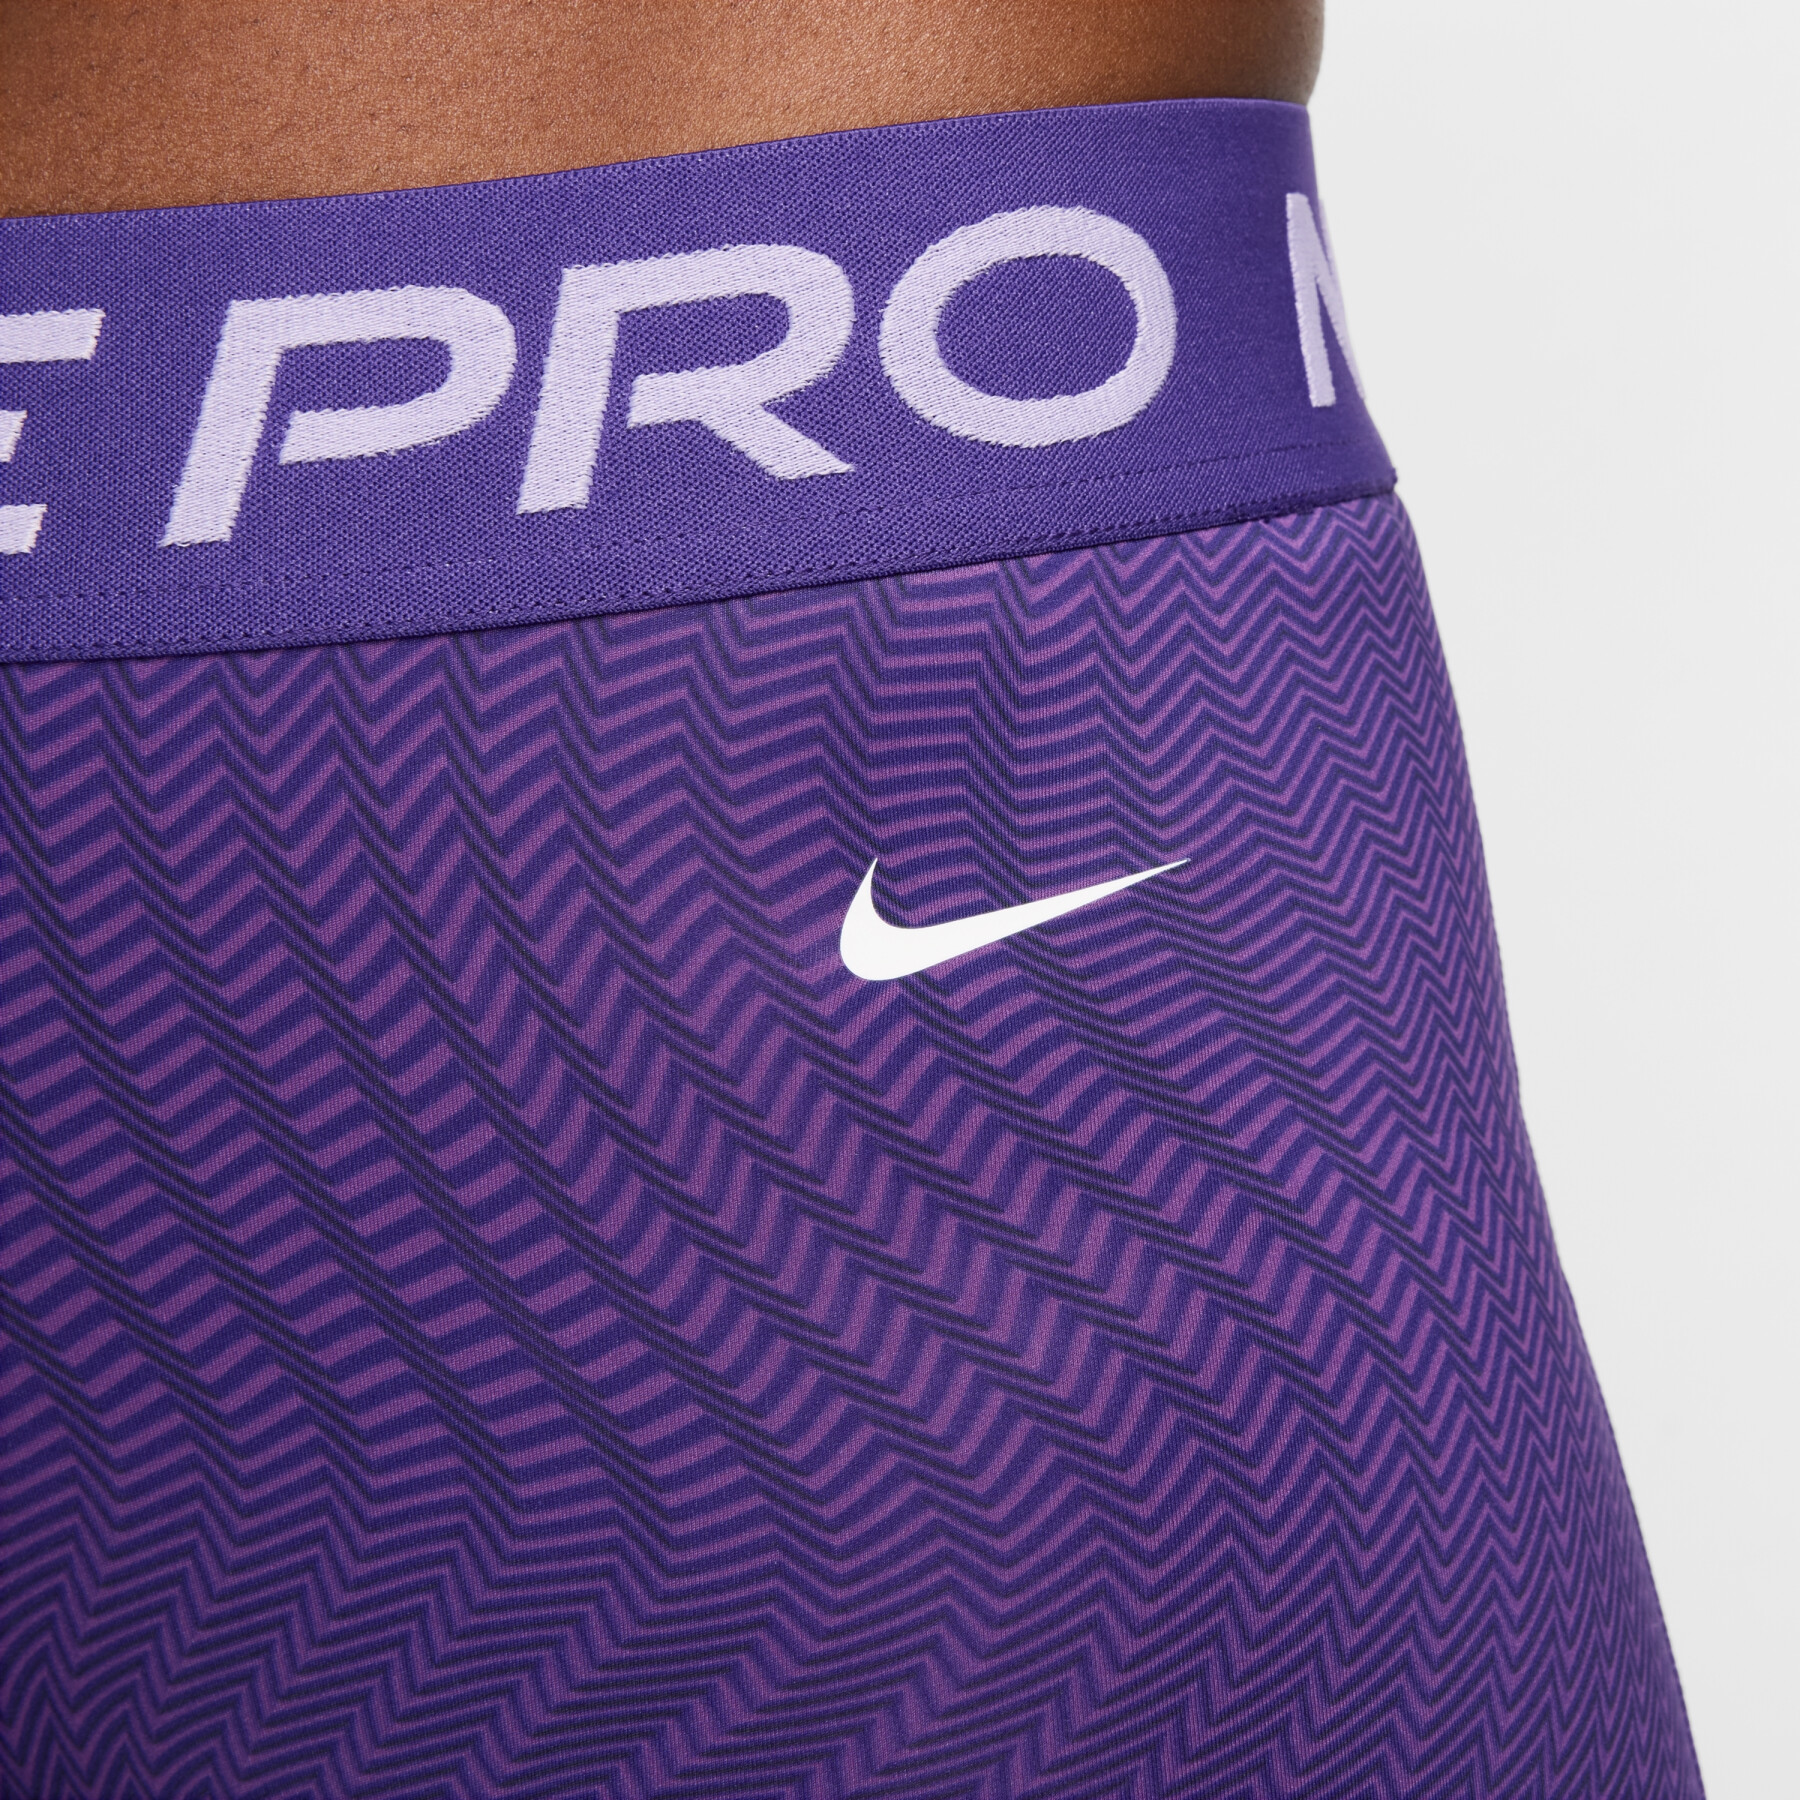 Calções estampados para mulher Nike Pro